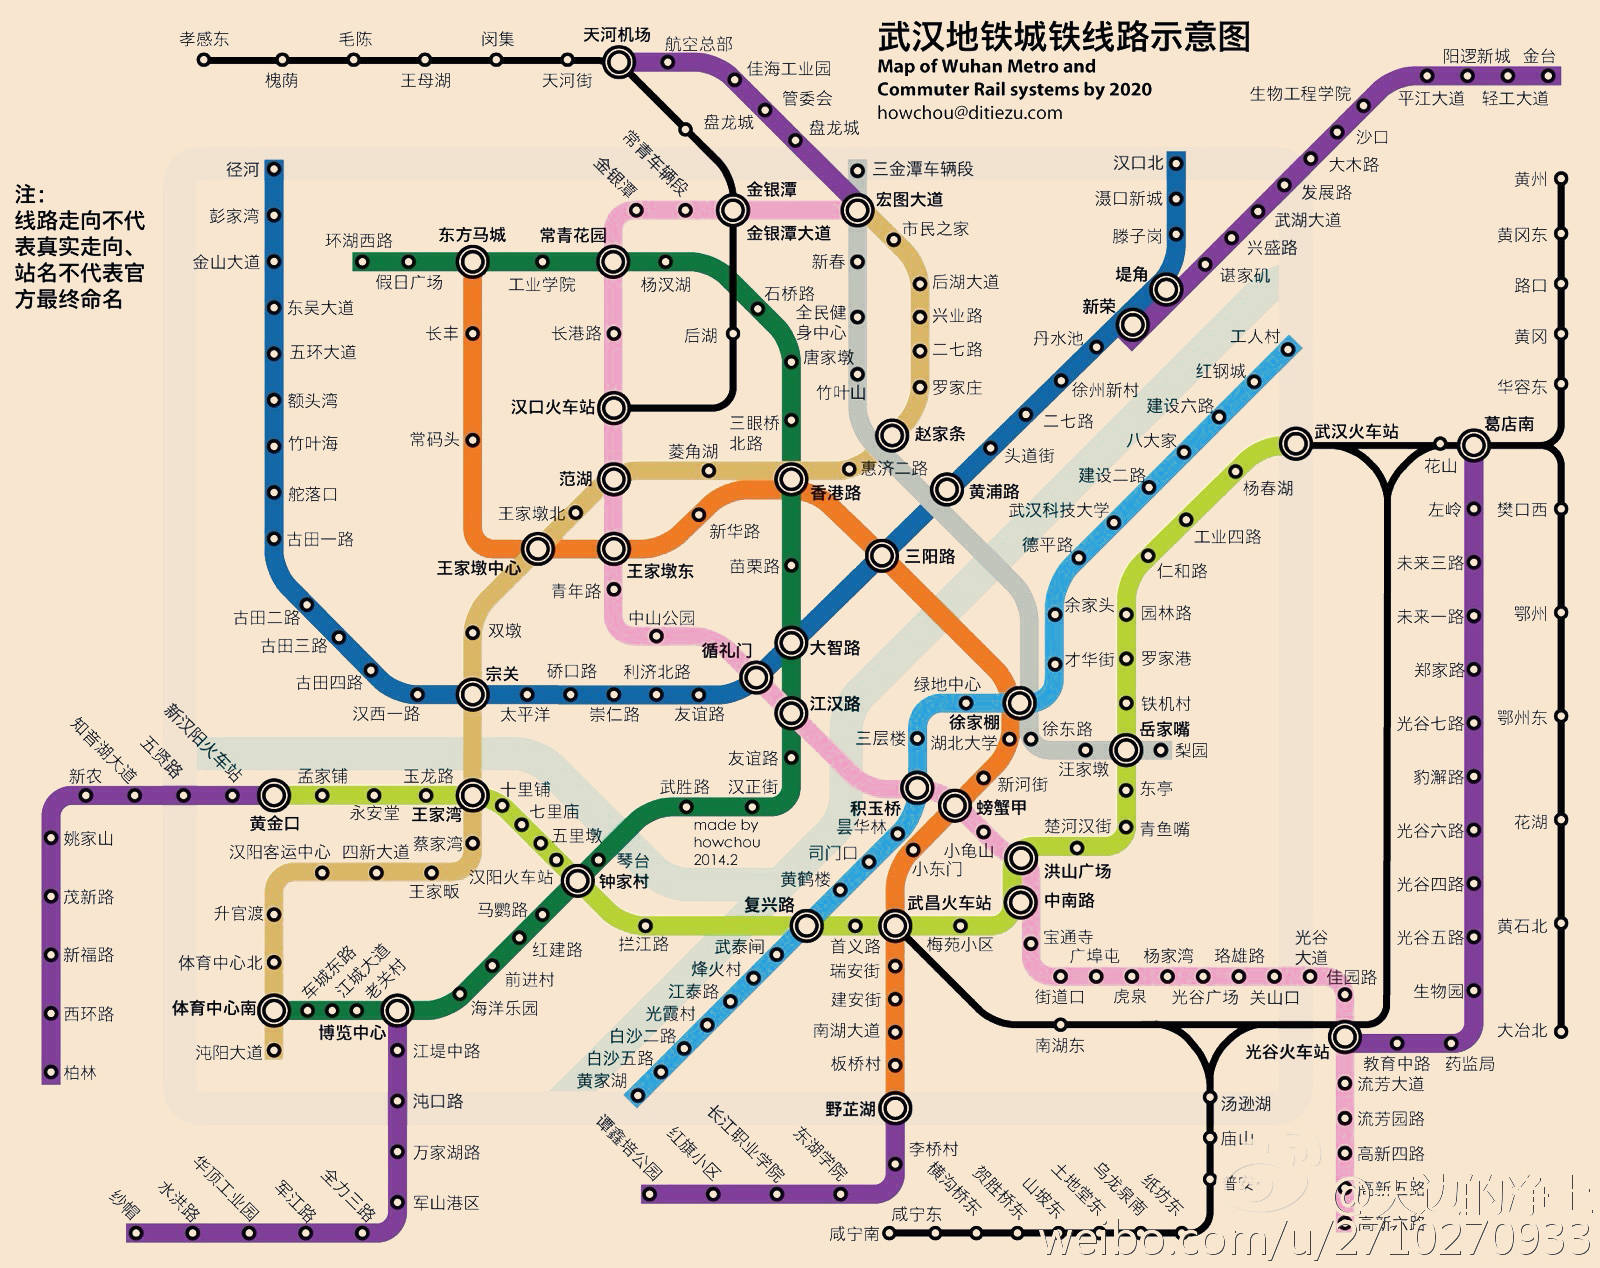 到2049年,武汉市将规划32条地铁线,总长度将超过1100公里,全球第一